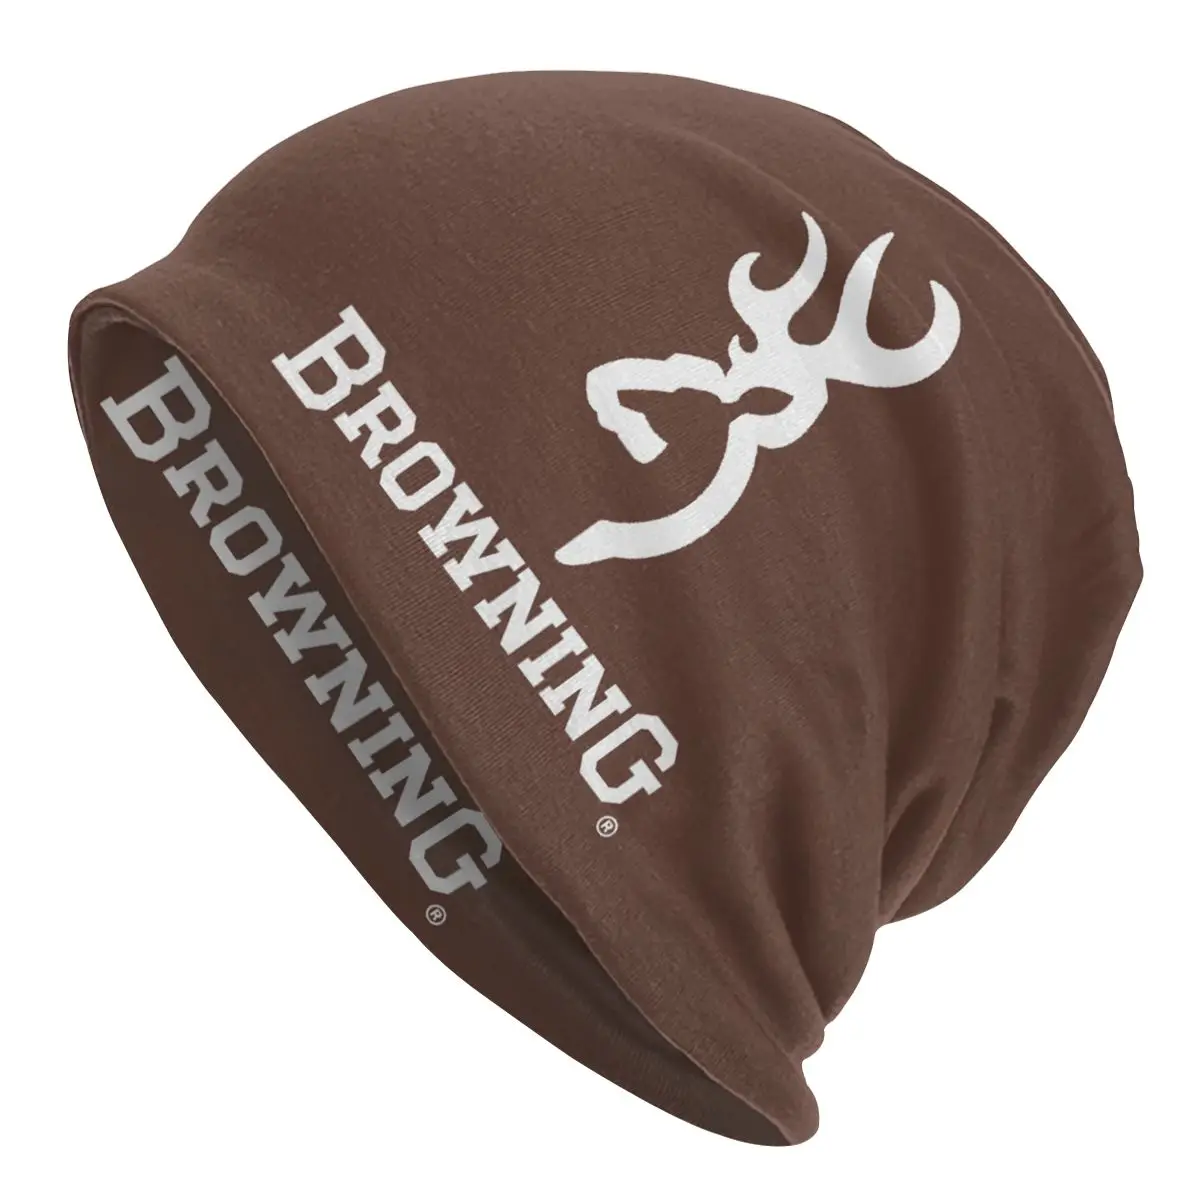 Browning Skullies Beanies Caps Streetwear Winter Warm Men Women Knit Hat Adult Unisex Outdoor Ski Bonnet Hats 1